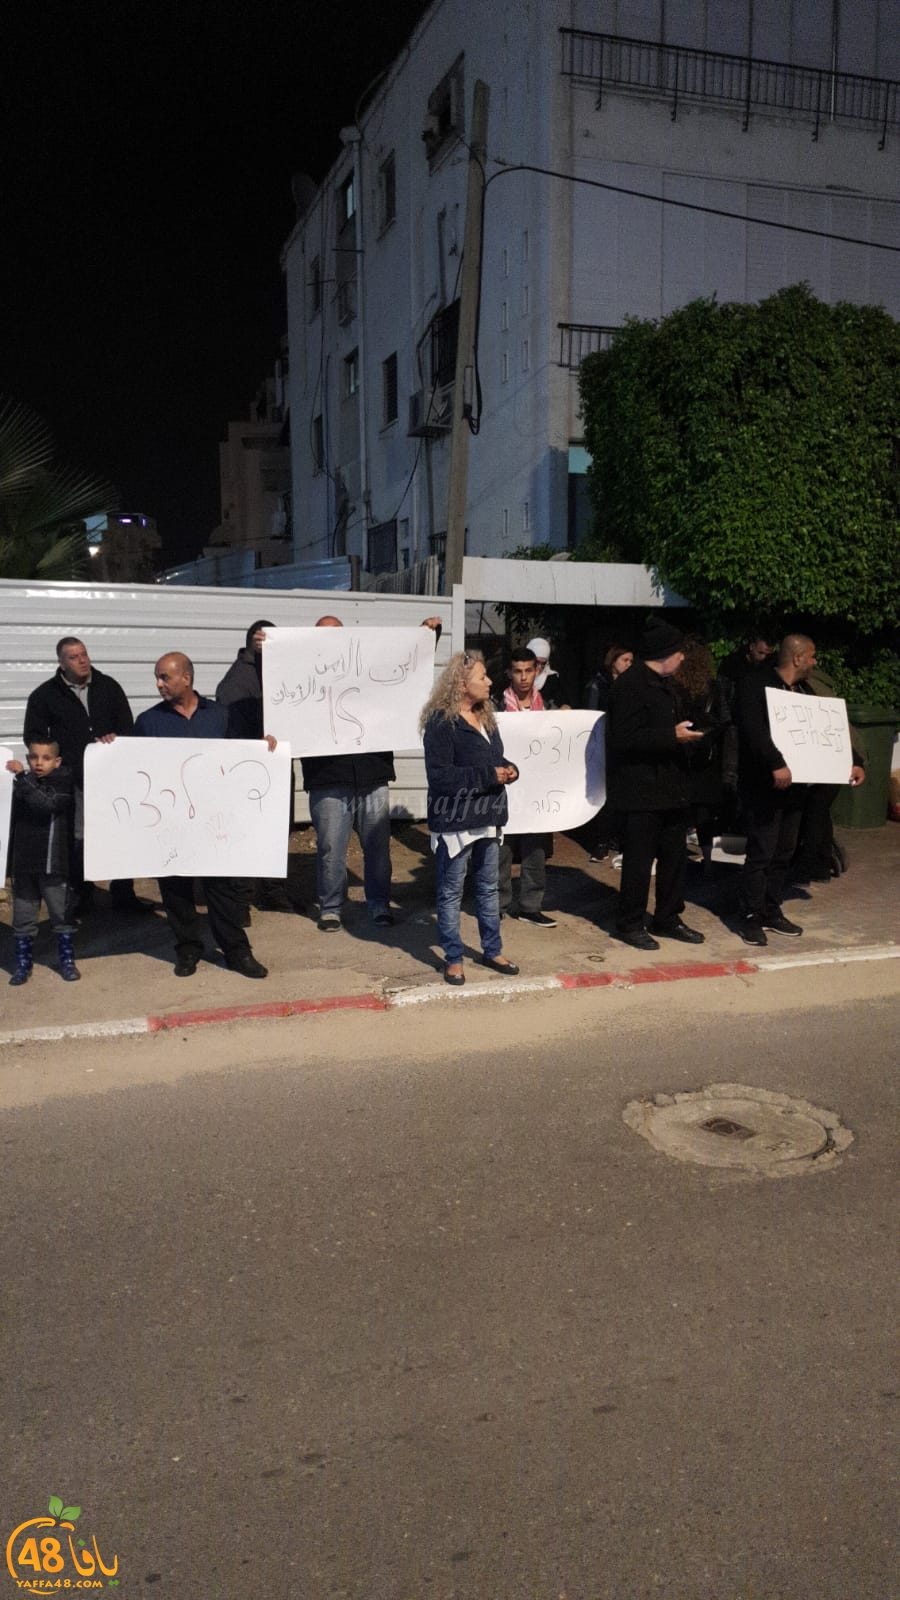  لليوم الثاني - أهالي مدينة اللد يتظاهرون ضد جرائم القتل أمام محطة الشرطة